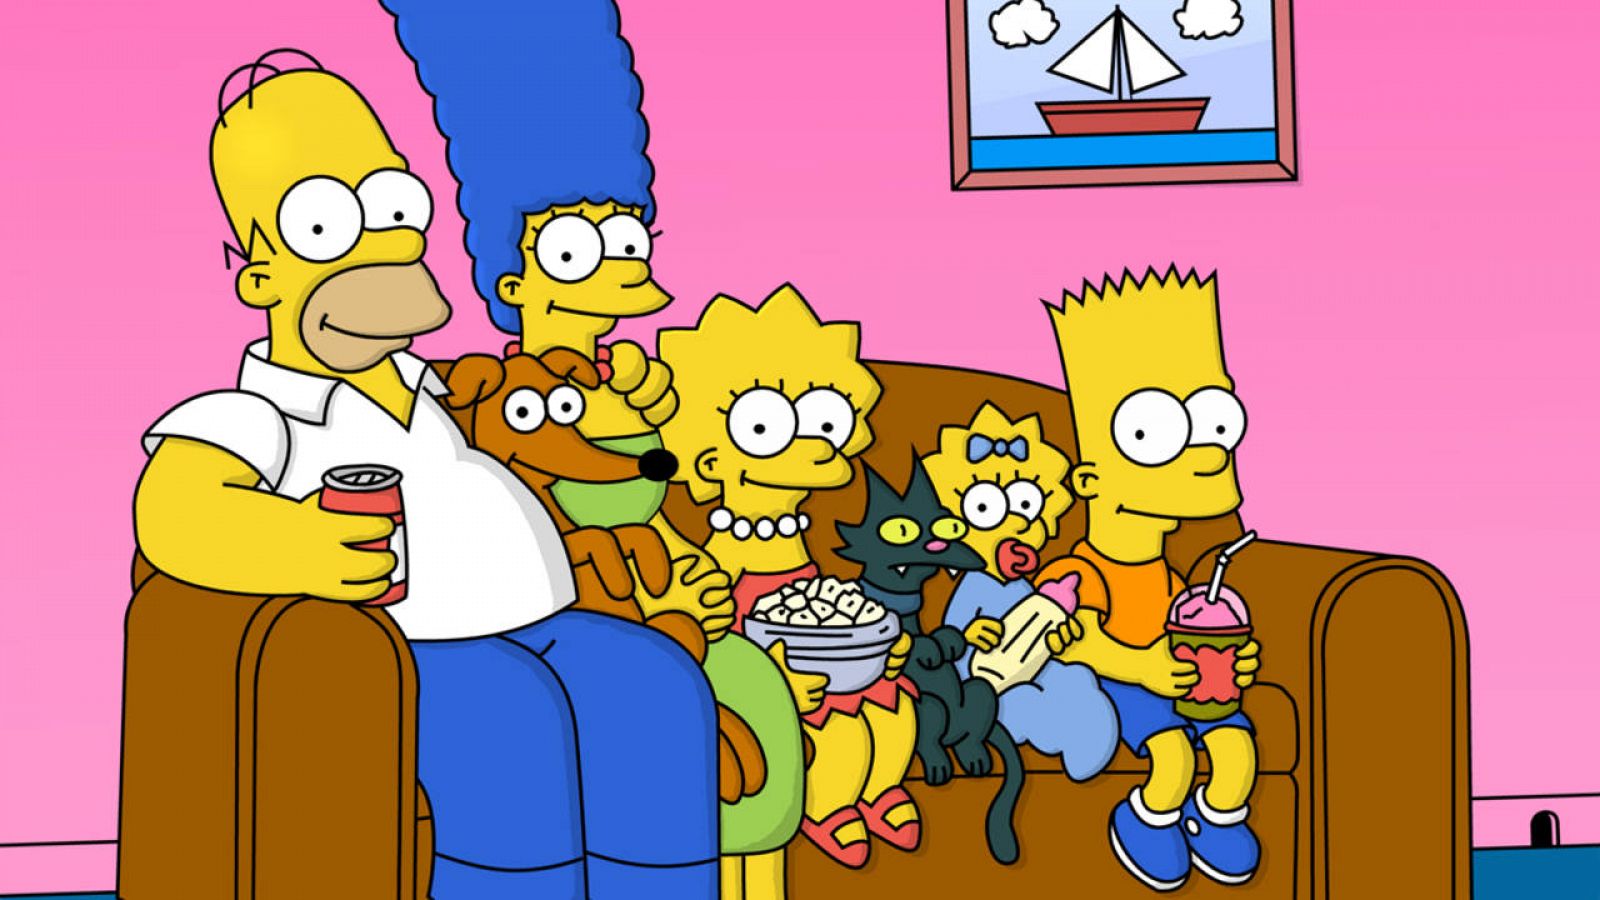 La verdadera historia de Los Simpson 